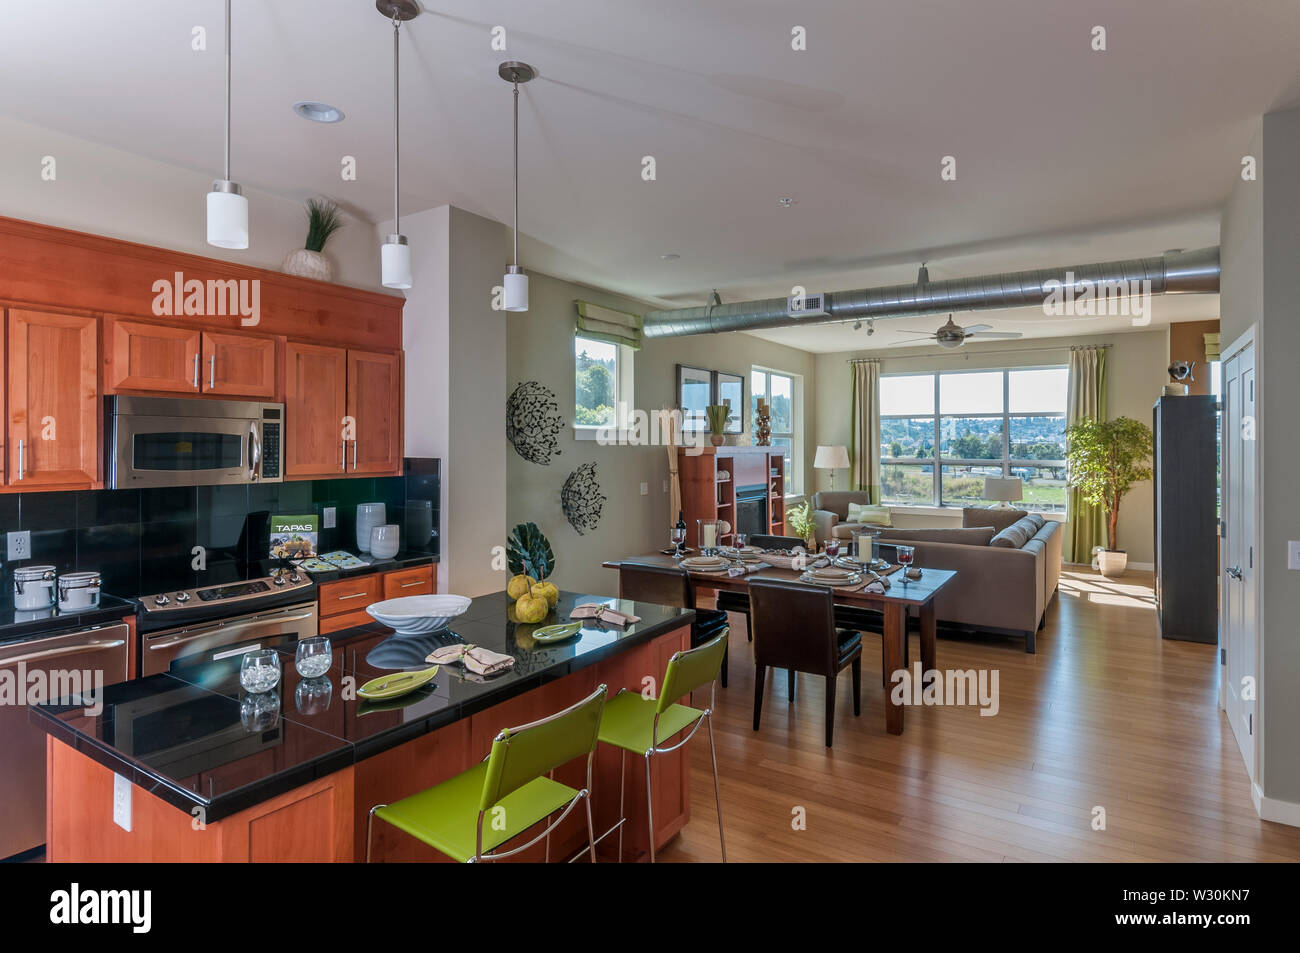 Condominio o apartamento interior mostrando área de cocina, comedor y sala  de estar Fotografía de stock - Alamy